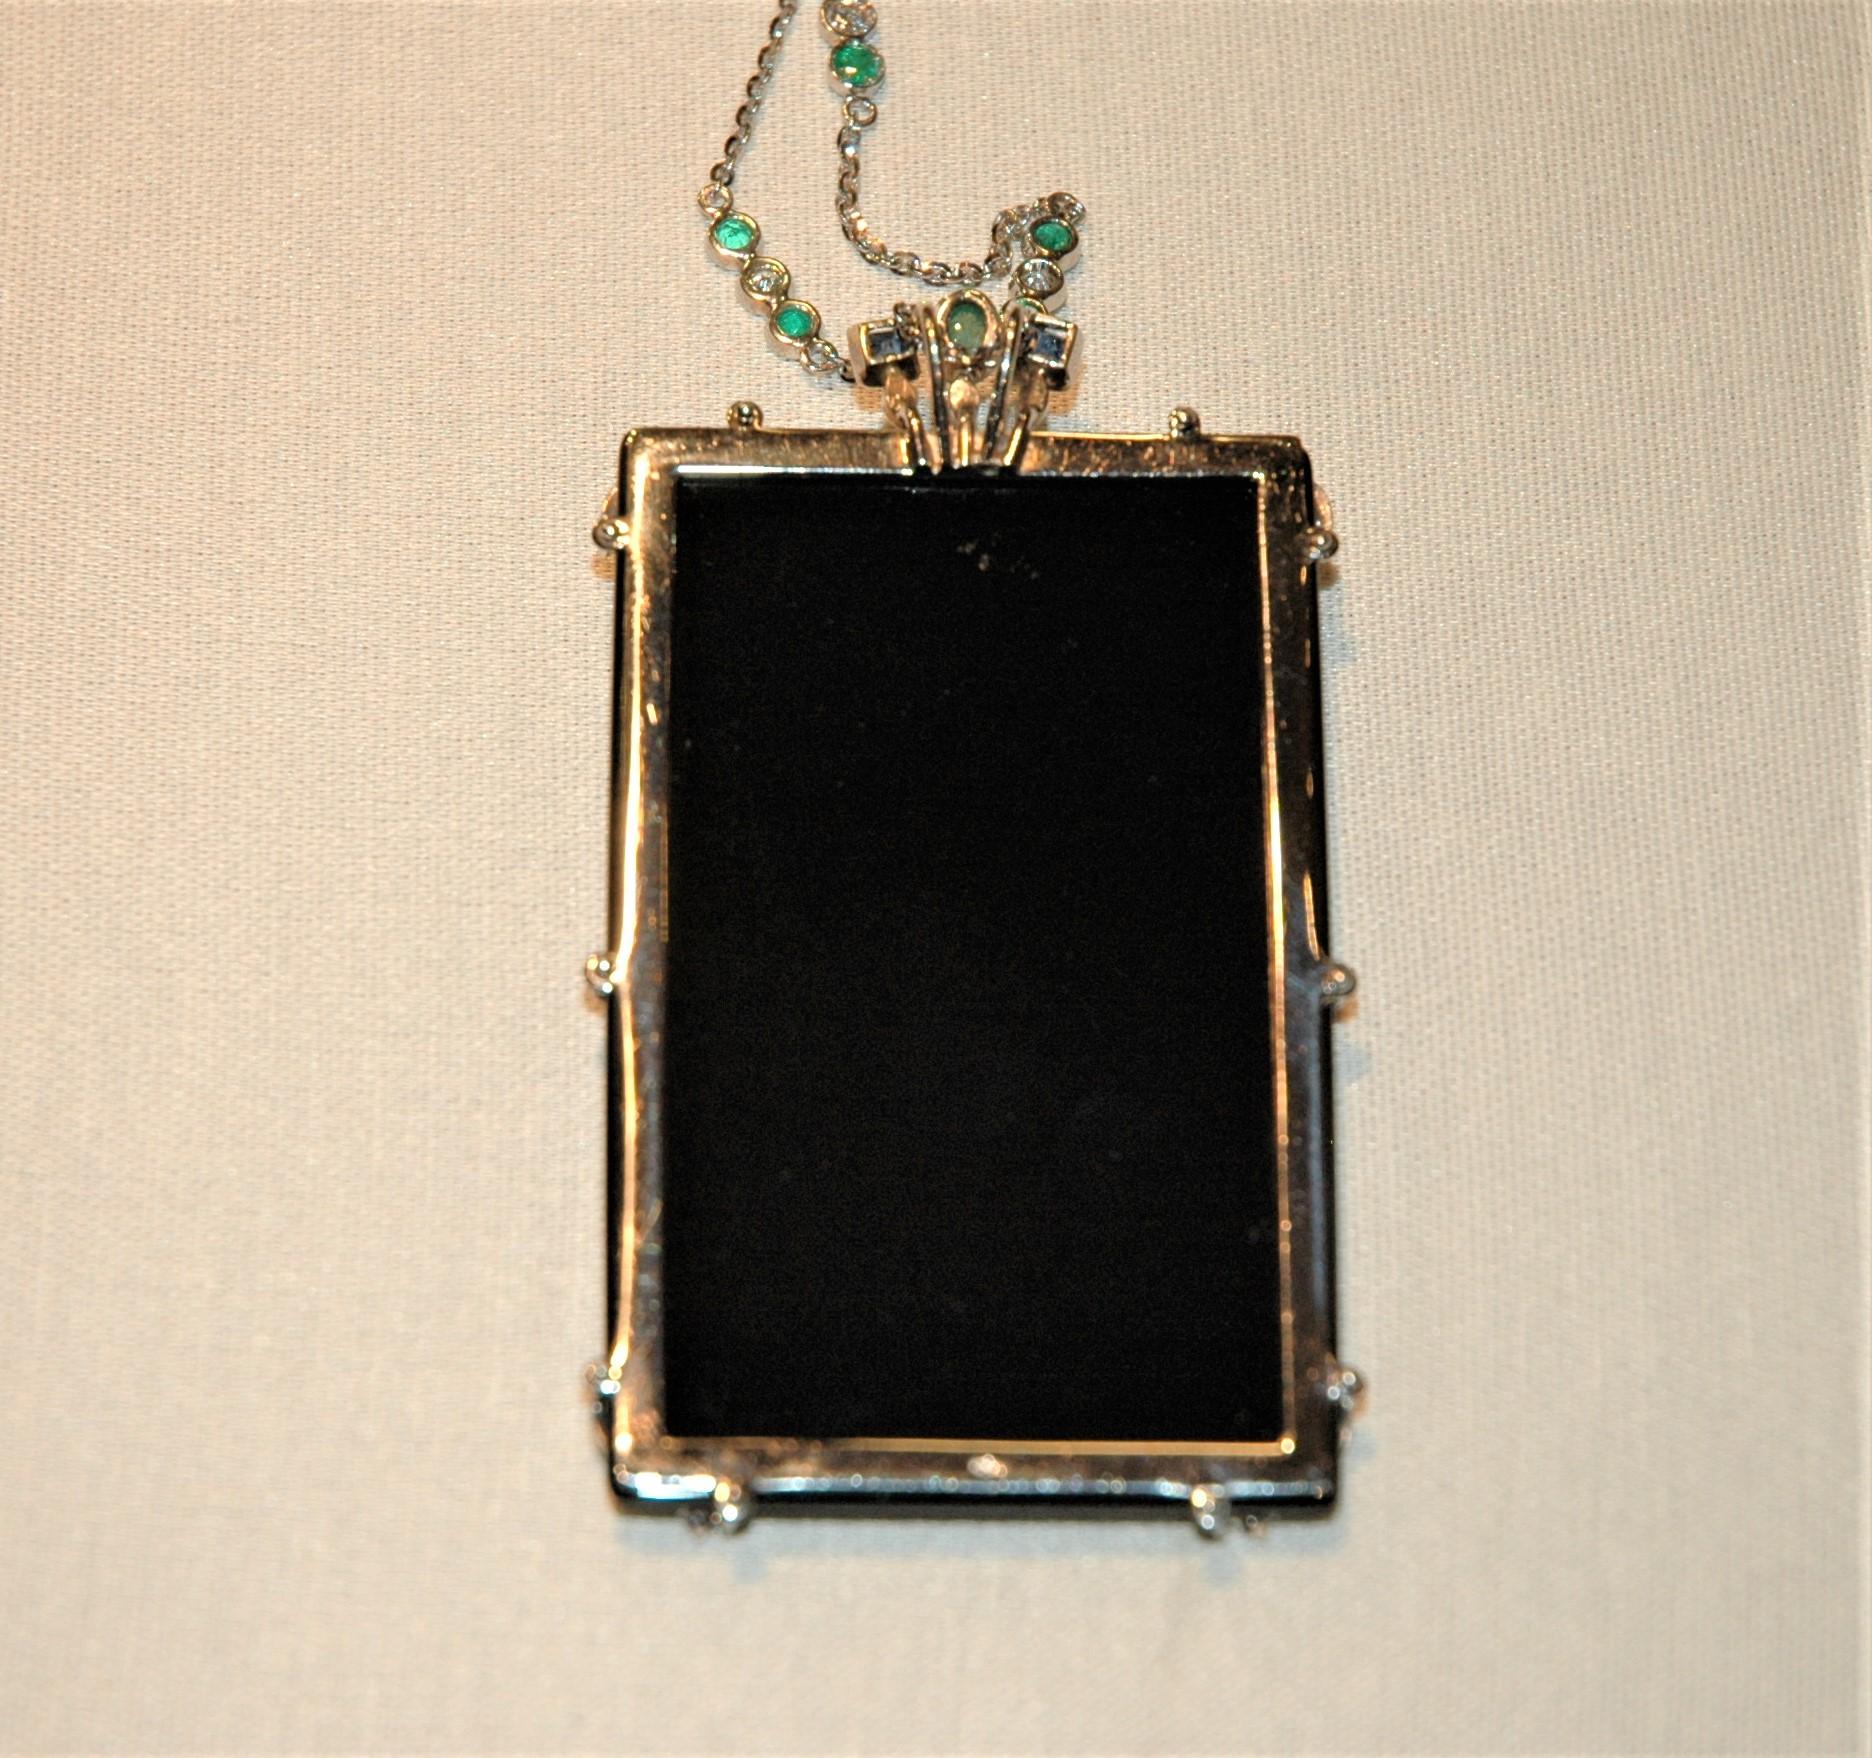 Onyx, Precious Stones, Diamonds, White Gold Pendant Necklace  In New Condition For Sale In BARI, IT